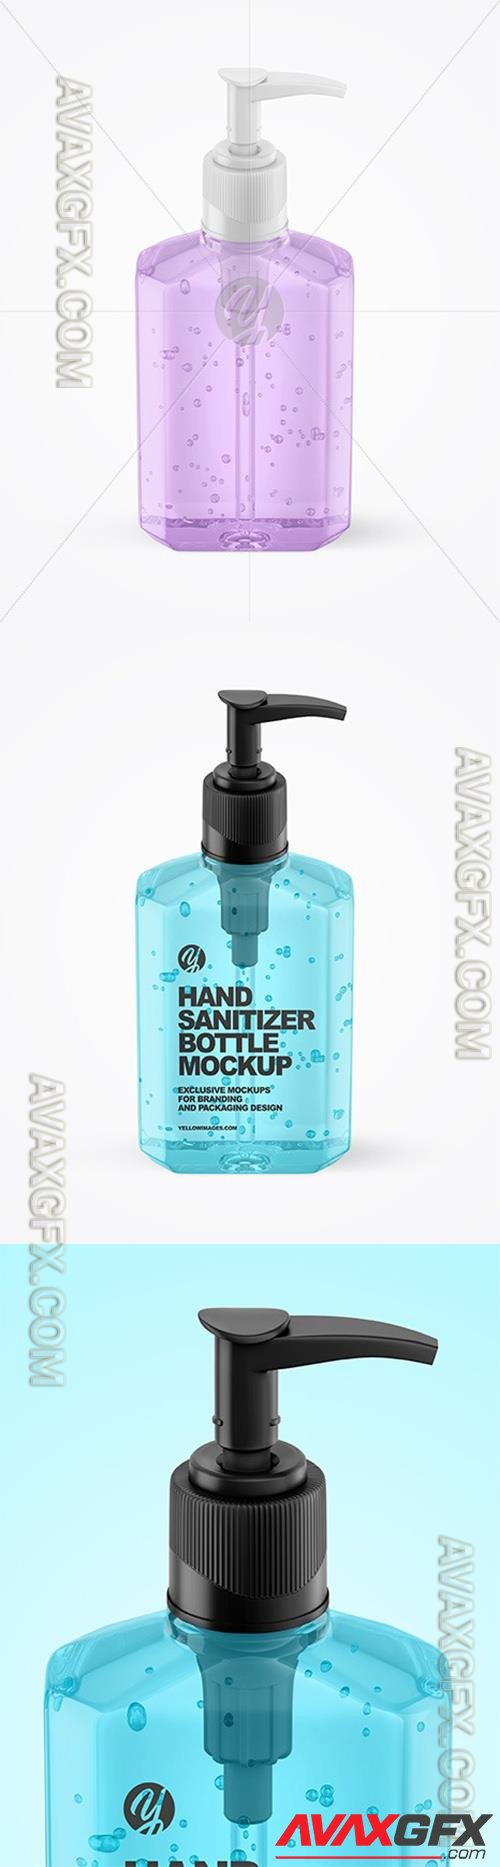 Sanitizing Gel Bottle with Dispenser Mockup 65403 TIF